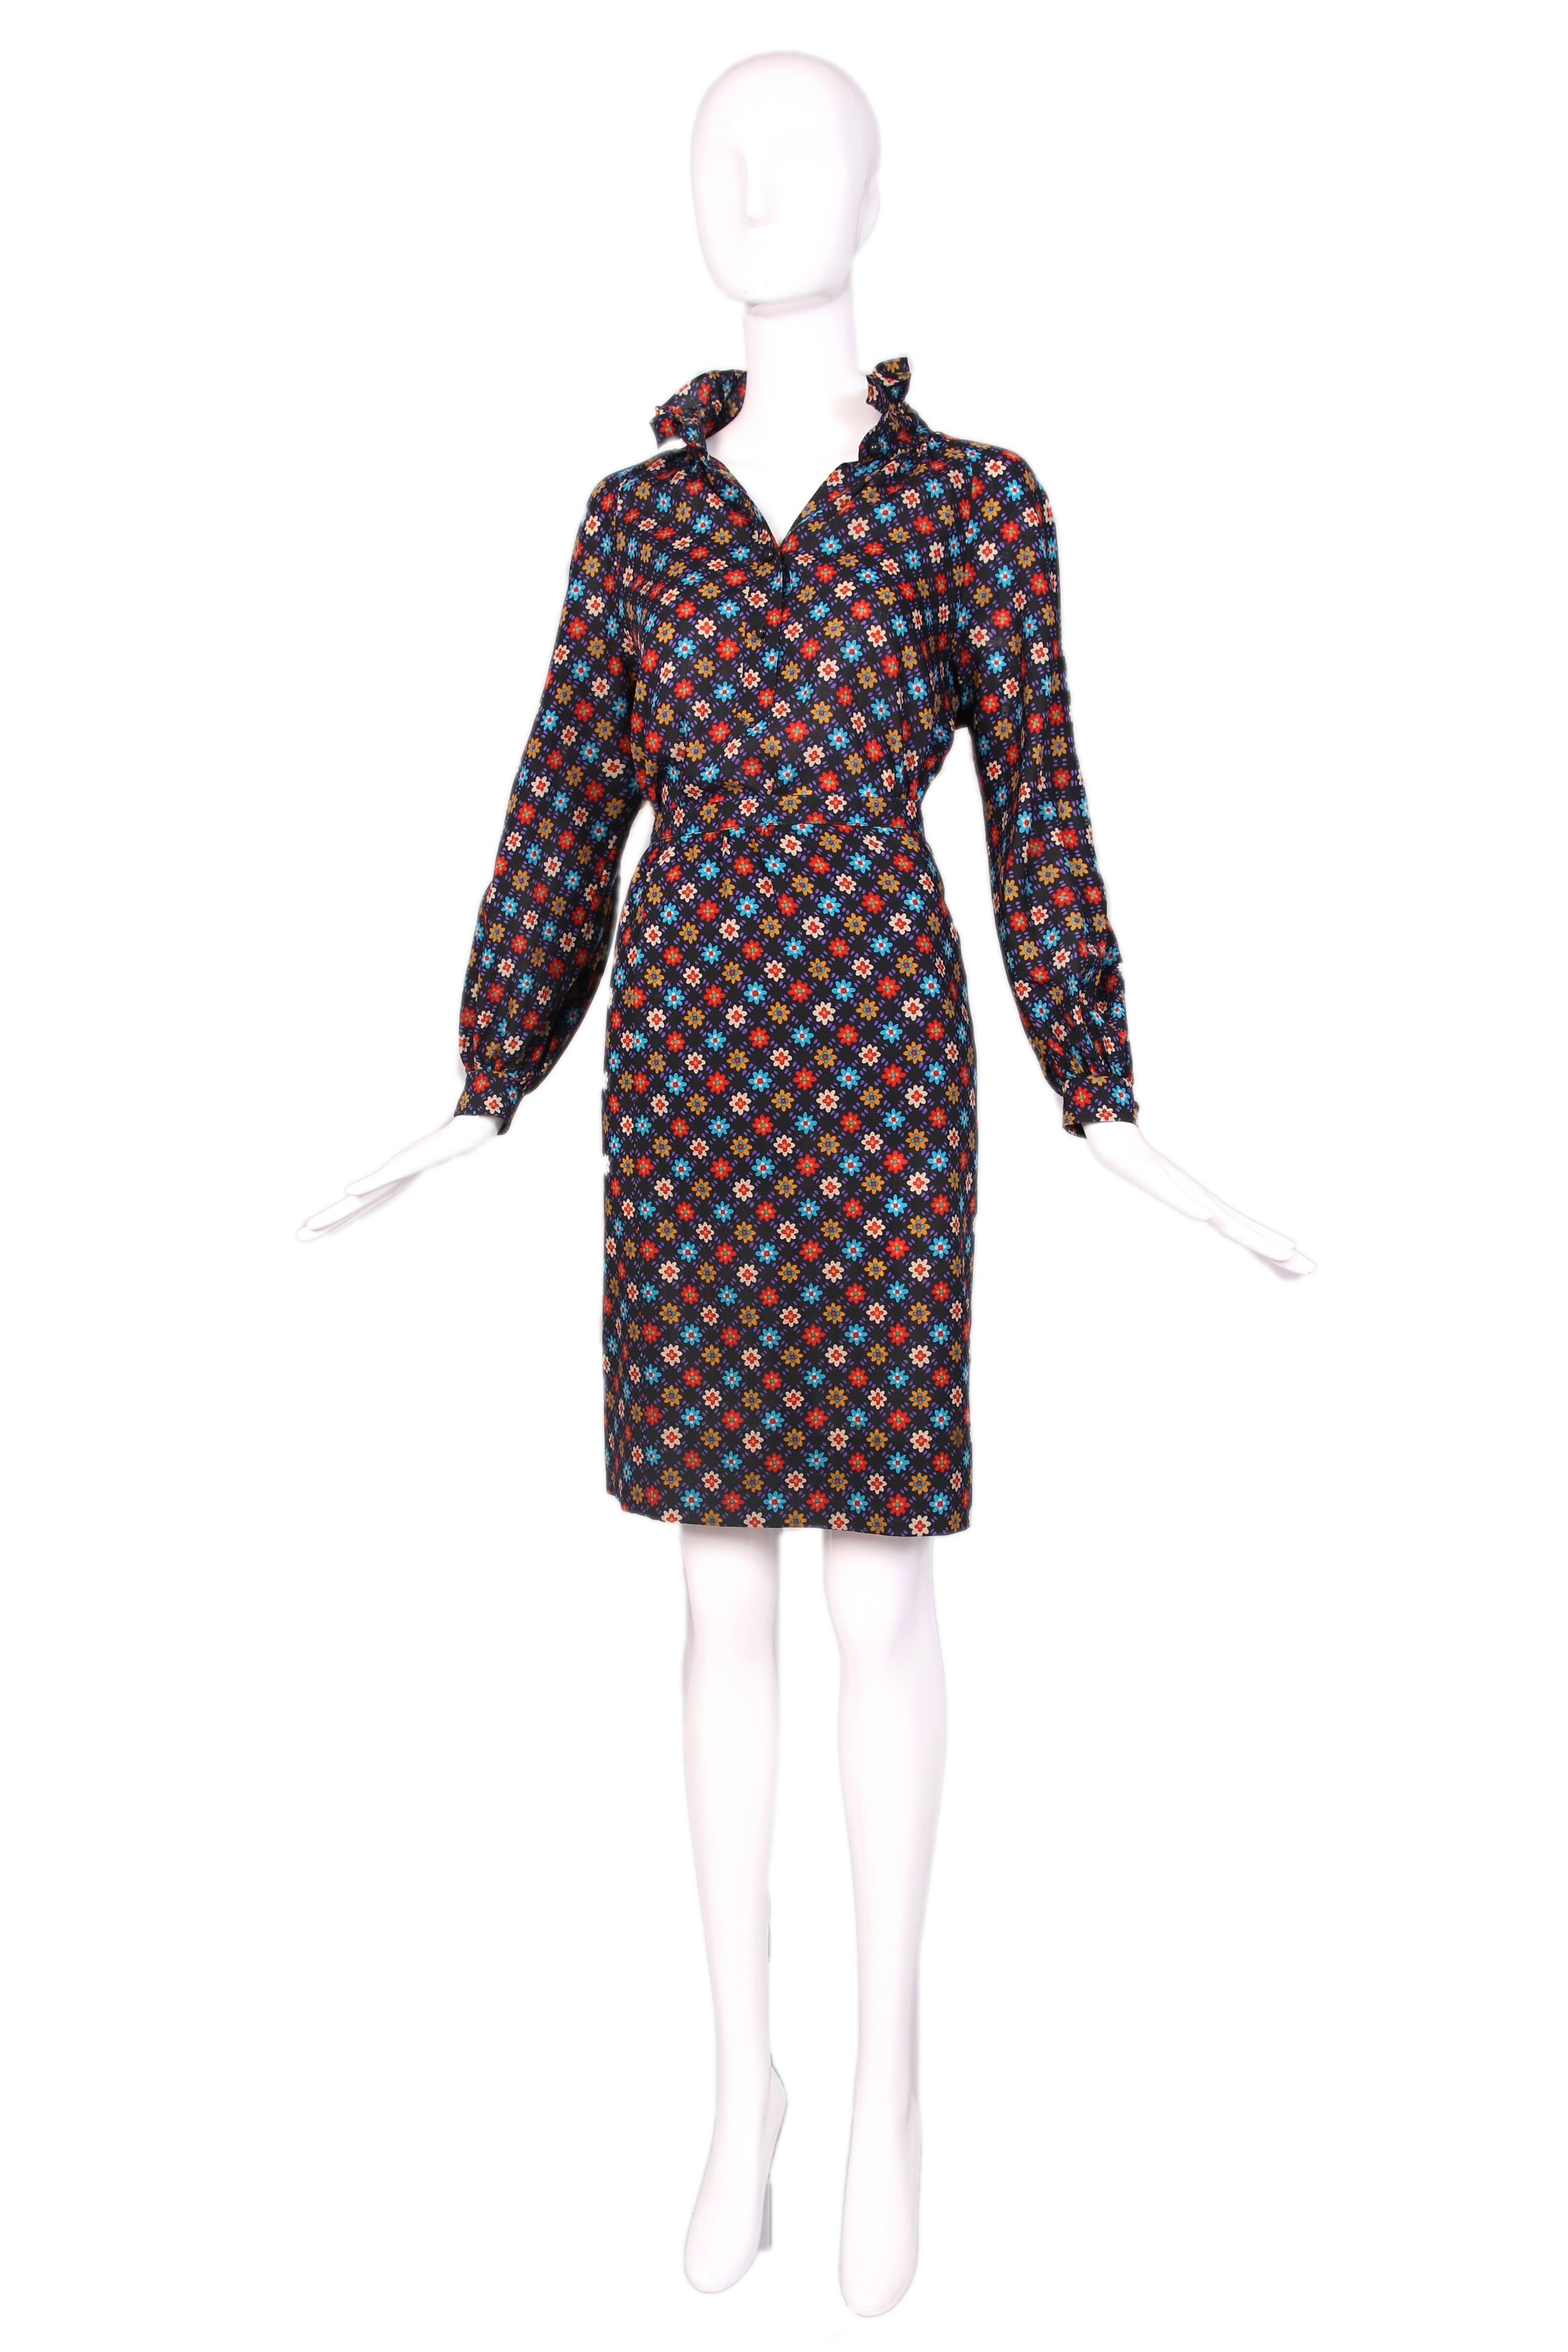 ensemble blouse et jupe à imprimé floral iconique Yves Saint Laurent des années 1970, en laine légère. Le chemisier est doté d'une fermeture à boutons sur le dessus et d'une bordure à volants sur le col. En parfait état. Chemisier Taille EU 42. Jupe